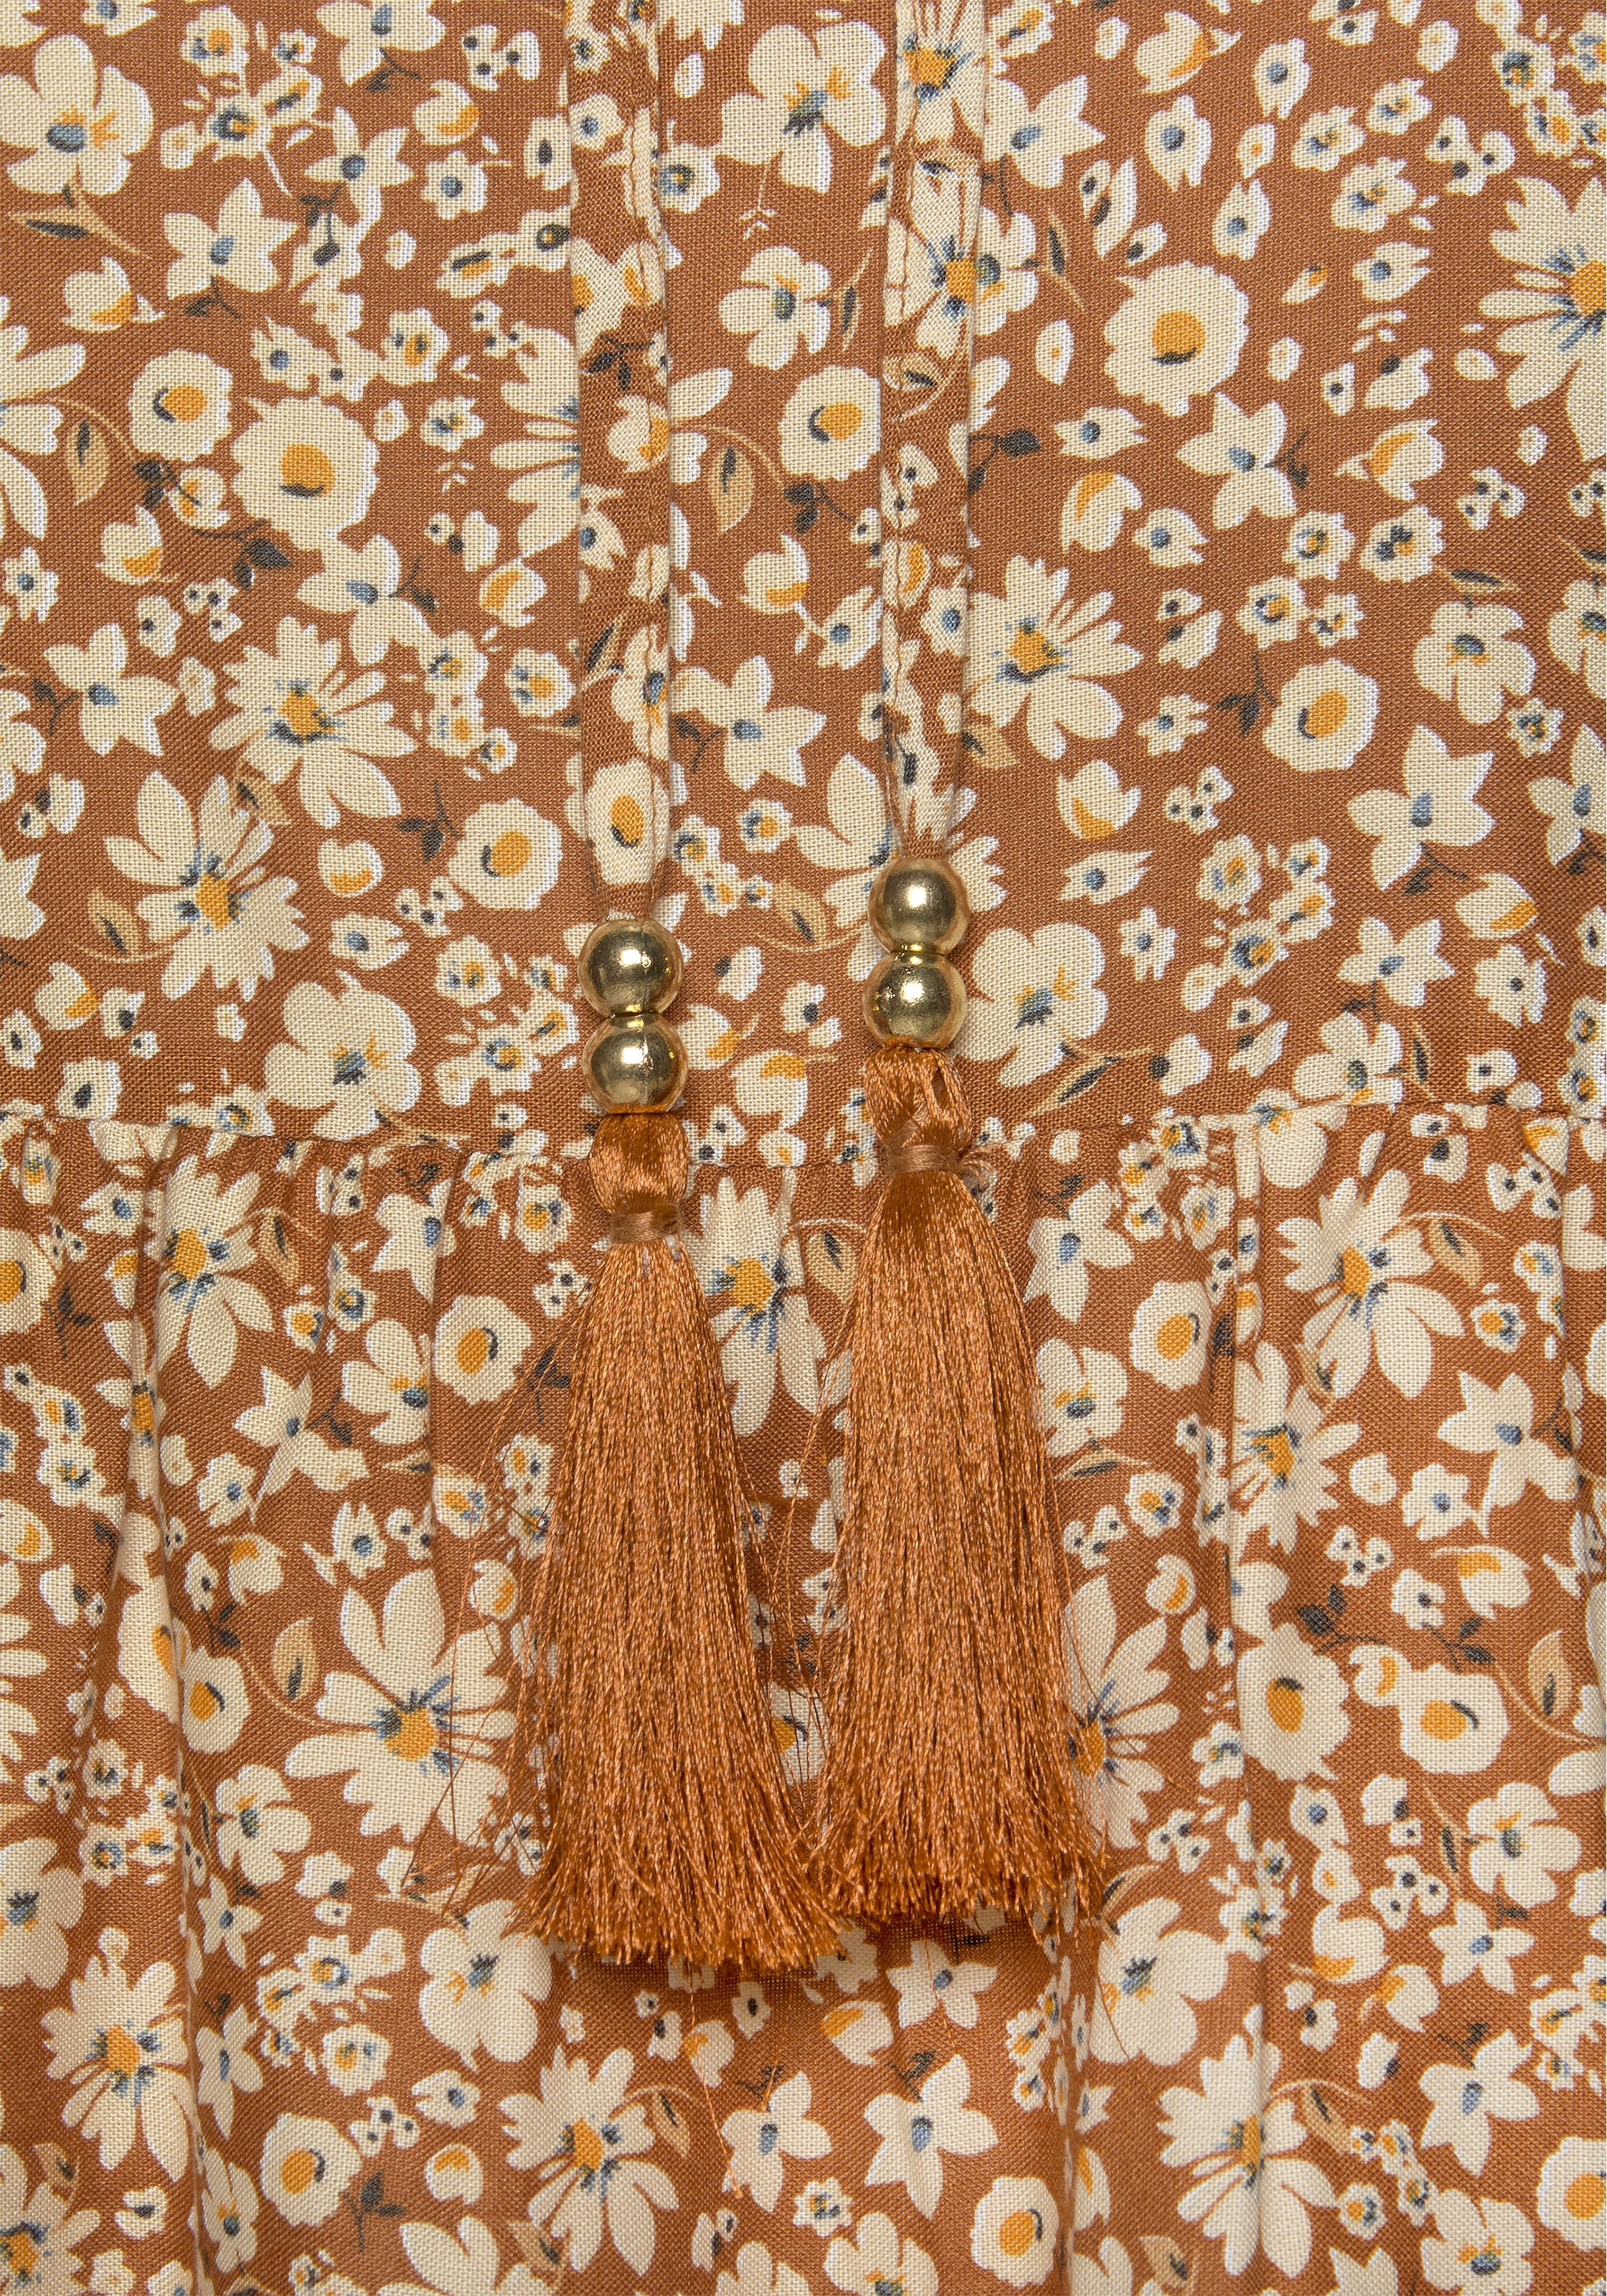 Buffalo ♕ Stil, bei Blümchenprint 70er-Jahre Damenbluse mit Schlupfbluse, Zierperle, und